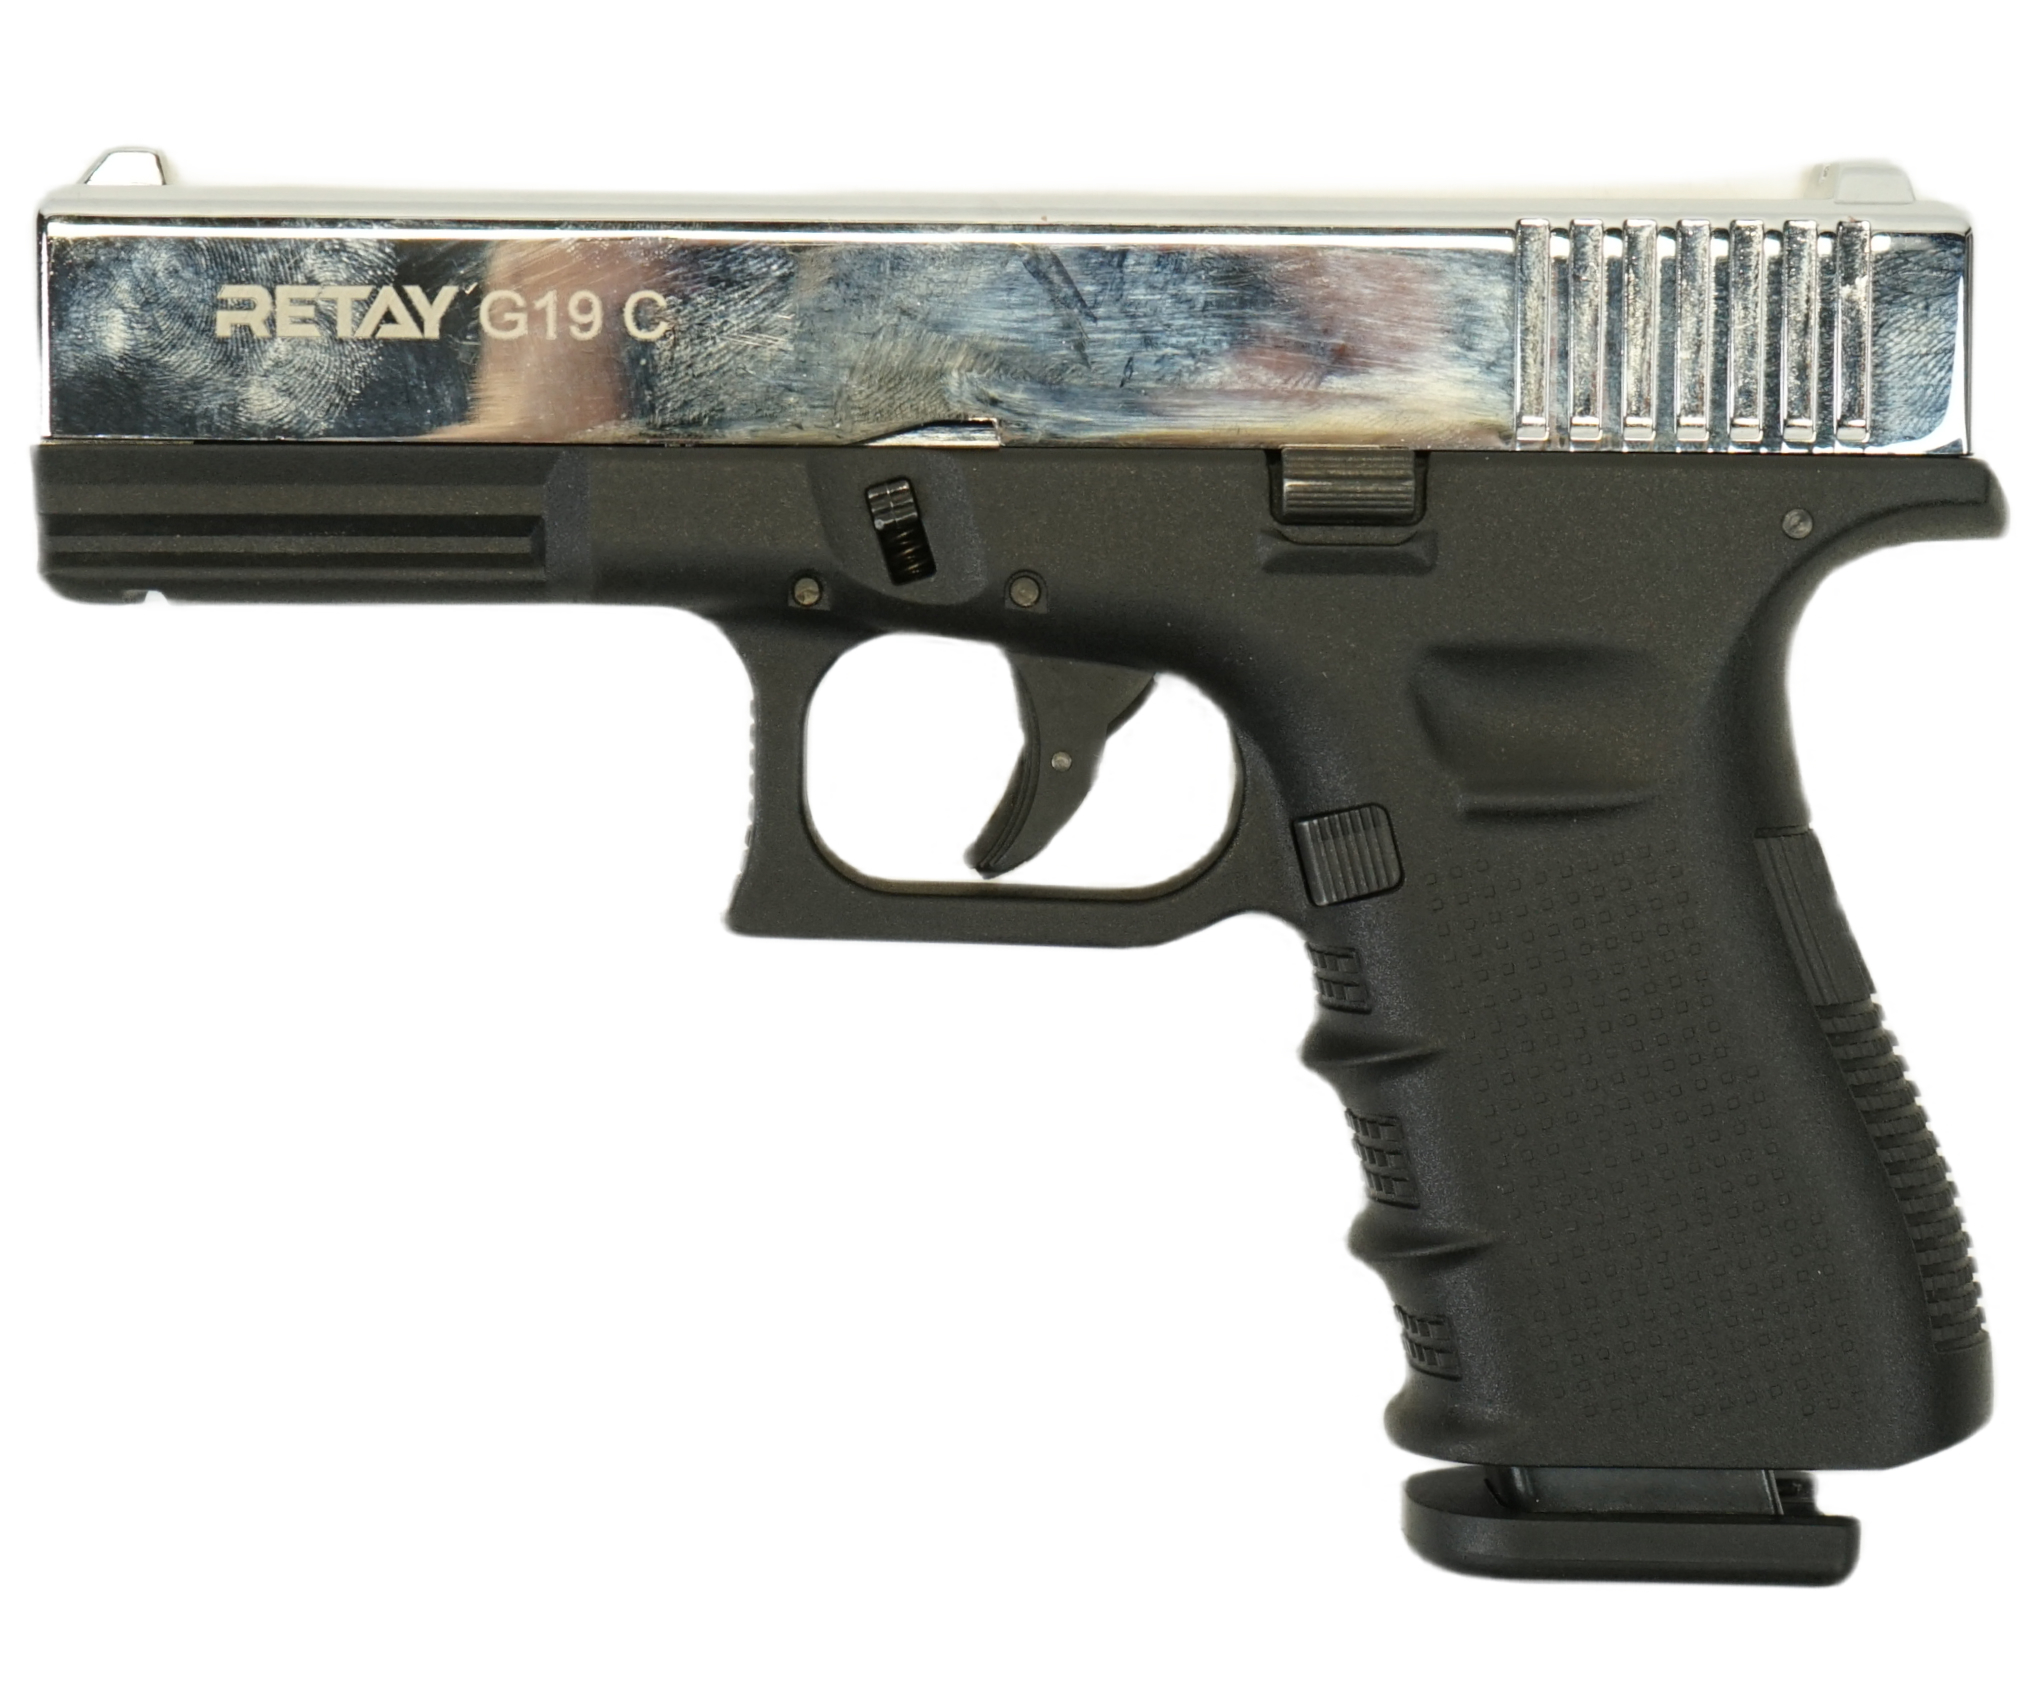 |Уценка| Охолощенный СХП пистолет Retay G19C (Glock) 9mm P.A.K Nickel (№ 00204449-407-УЦ)